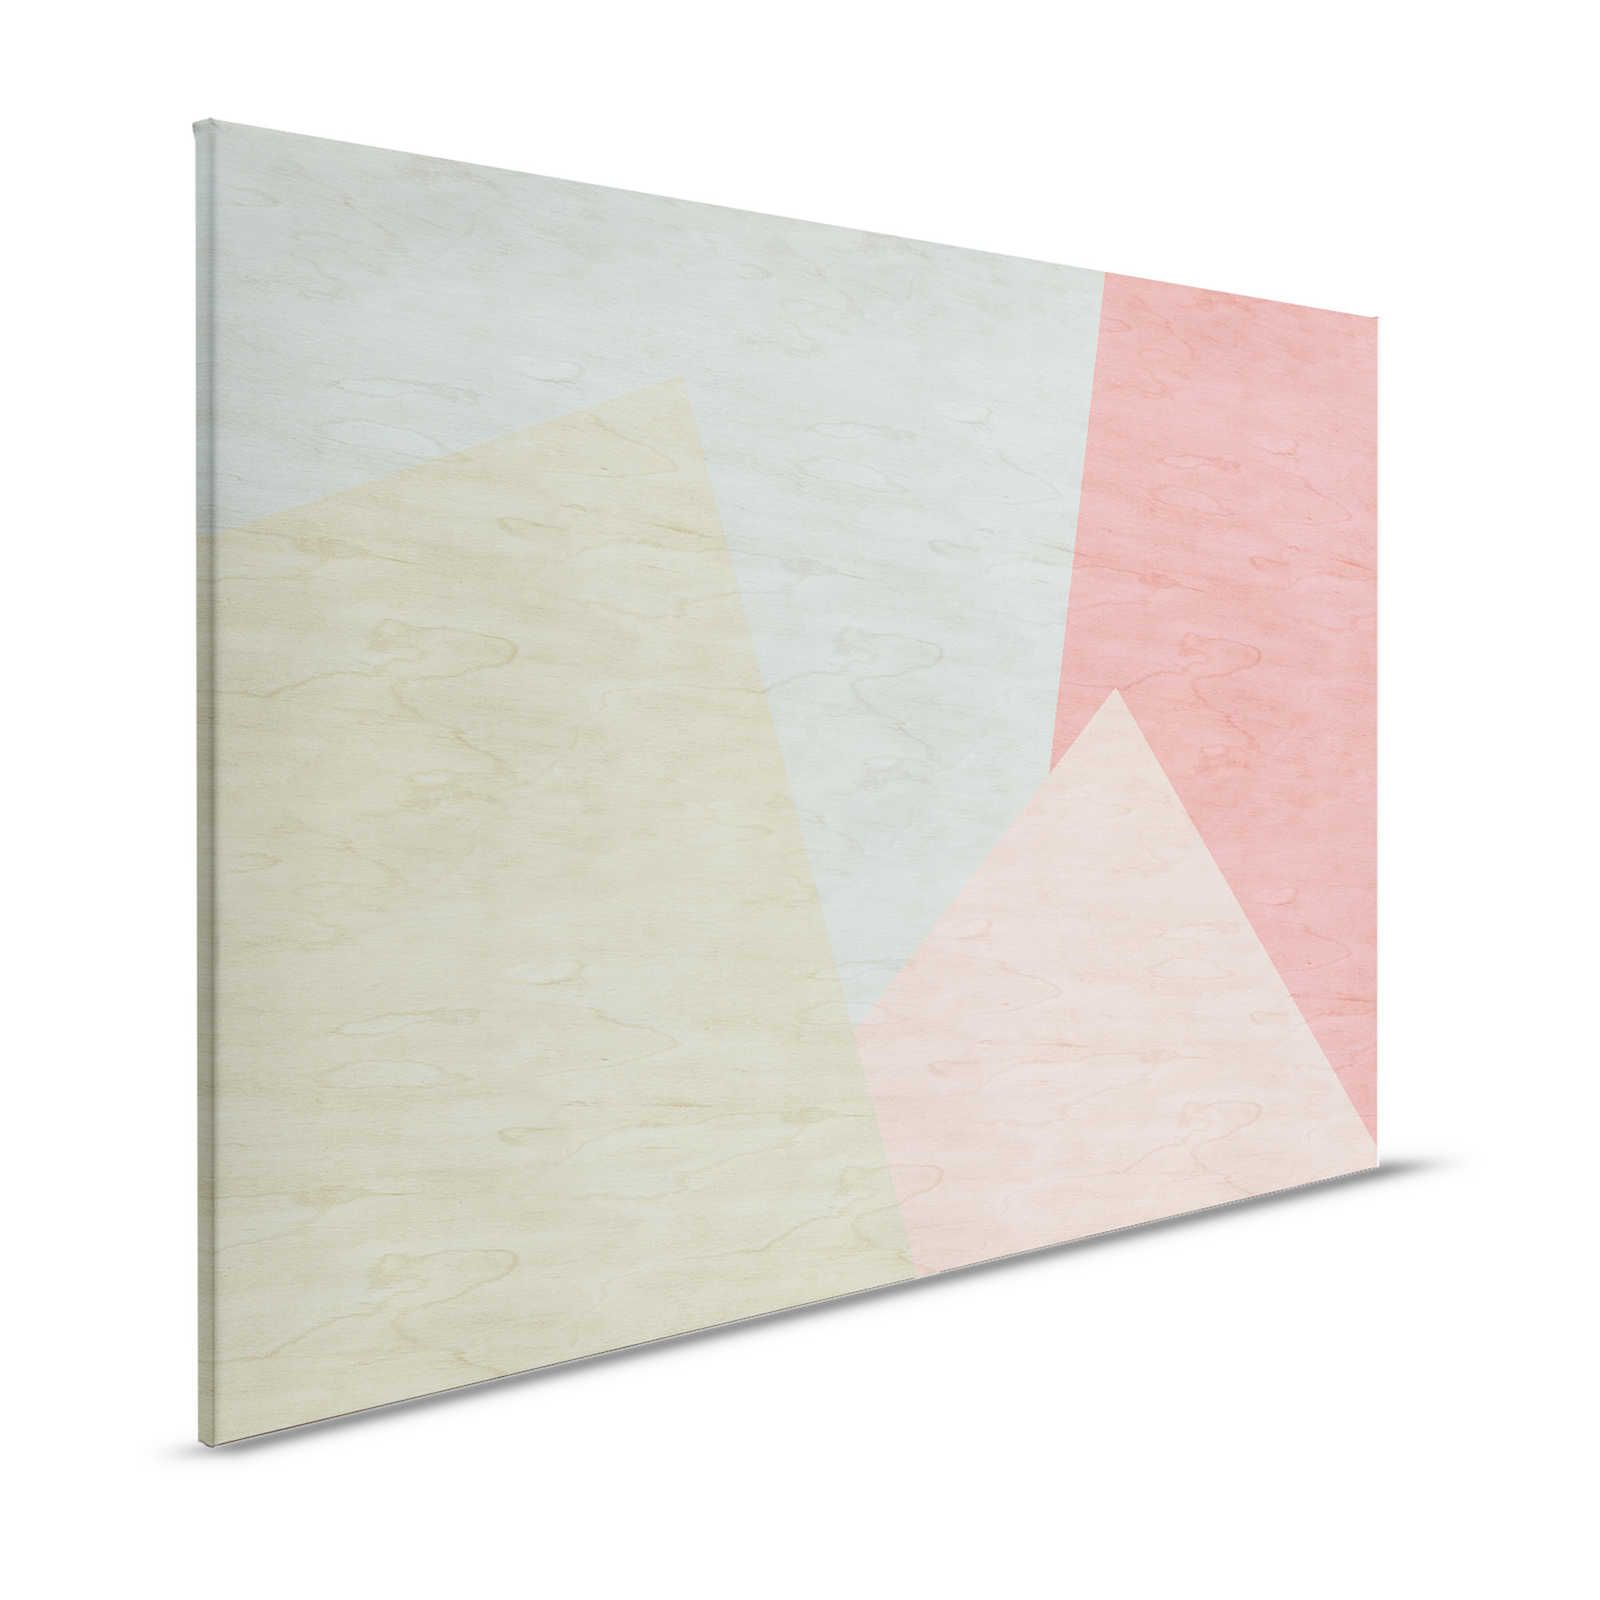 Inaly 2 - Lienzo abstracto y colorista con aspecto de contrachapado - 1,20 m x 0,80 m
